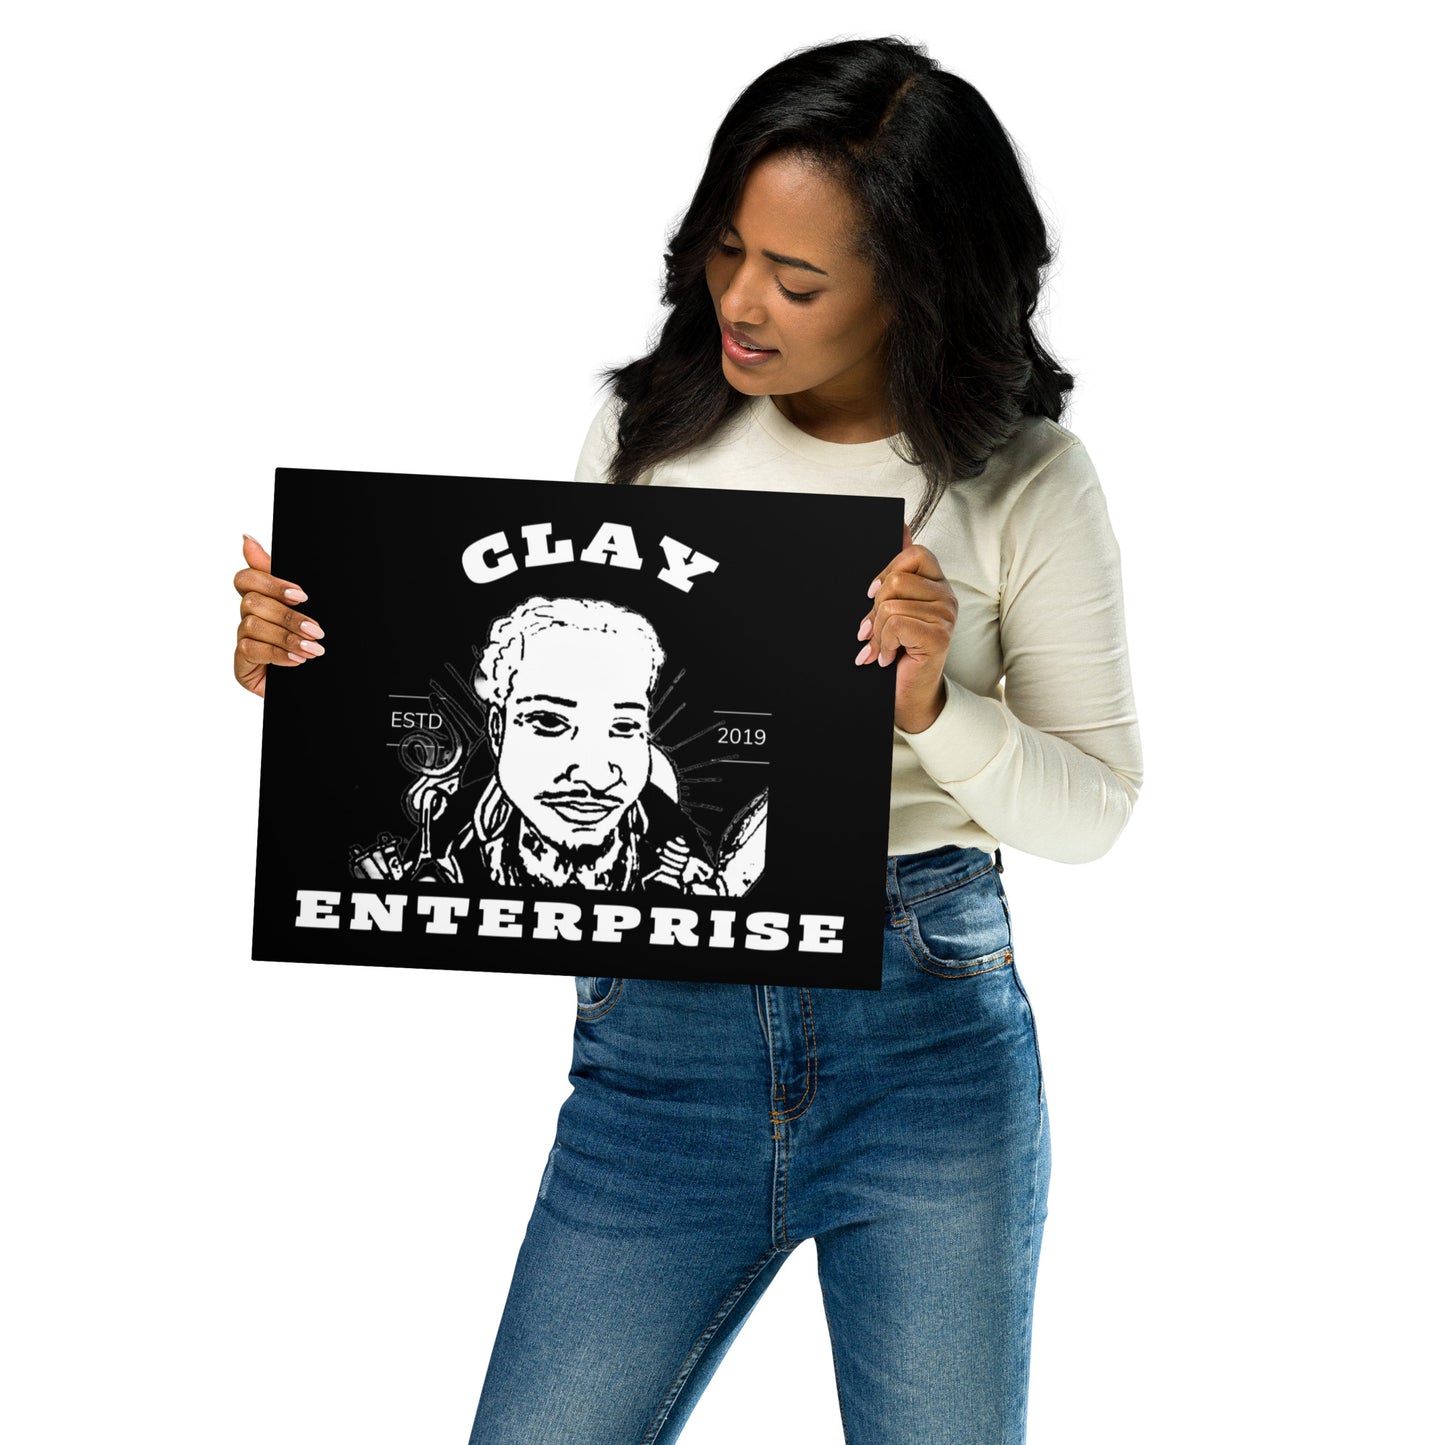 "CLAY Enterprise brand/logo" Metal Print Wall Art